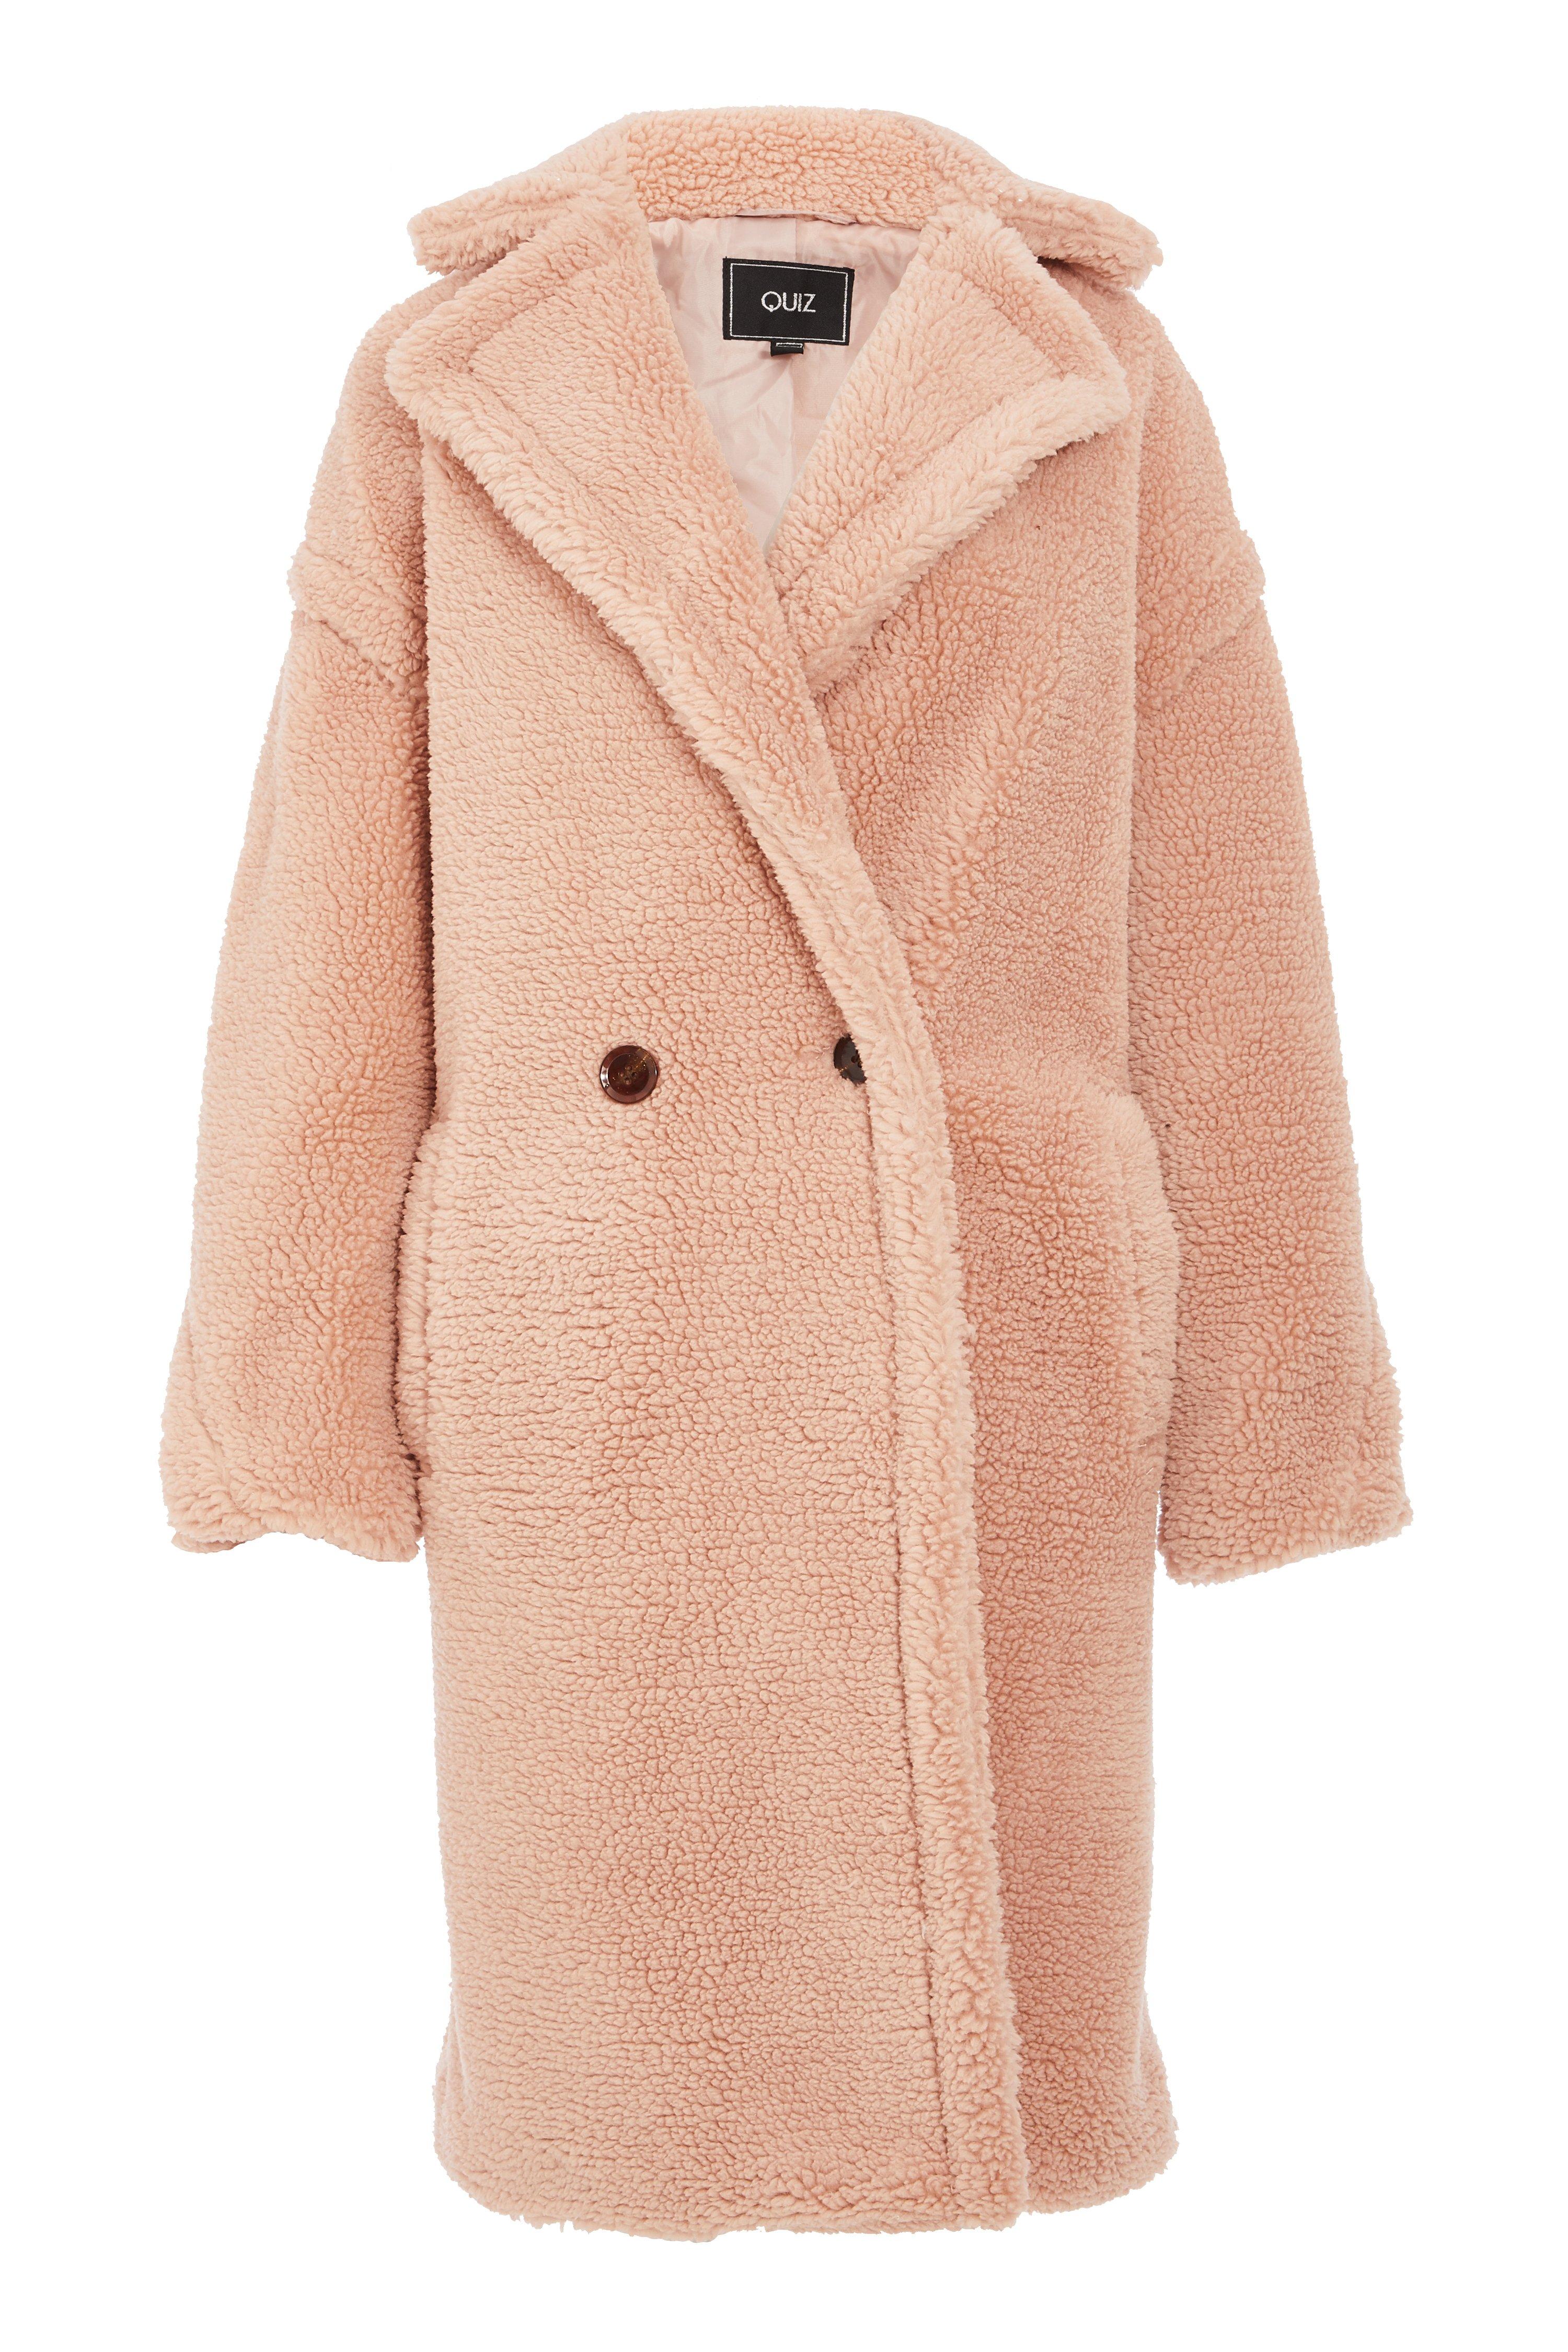 Blush Teddy Bear Faux Fur Long Jacket - Quiz Clothing